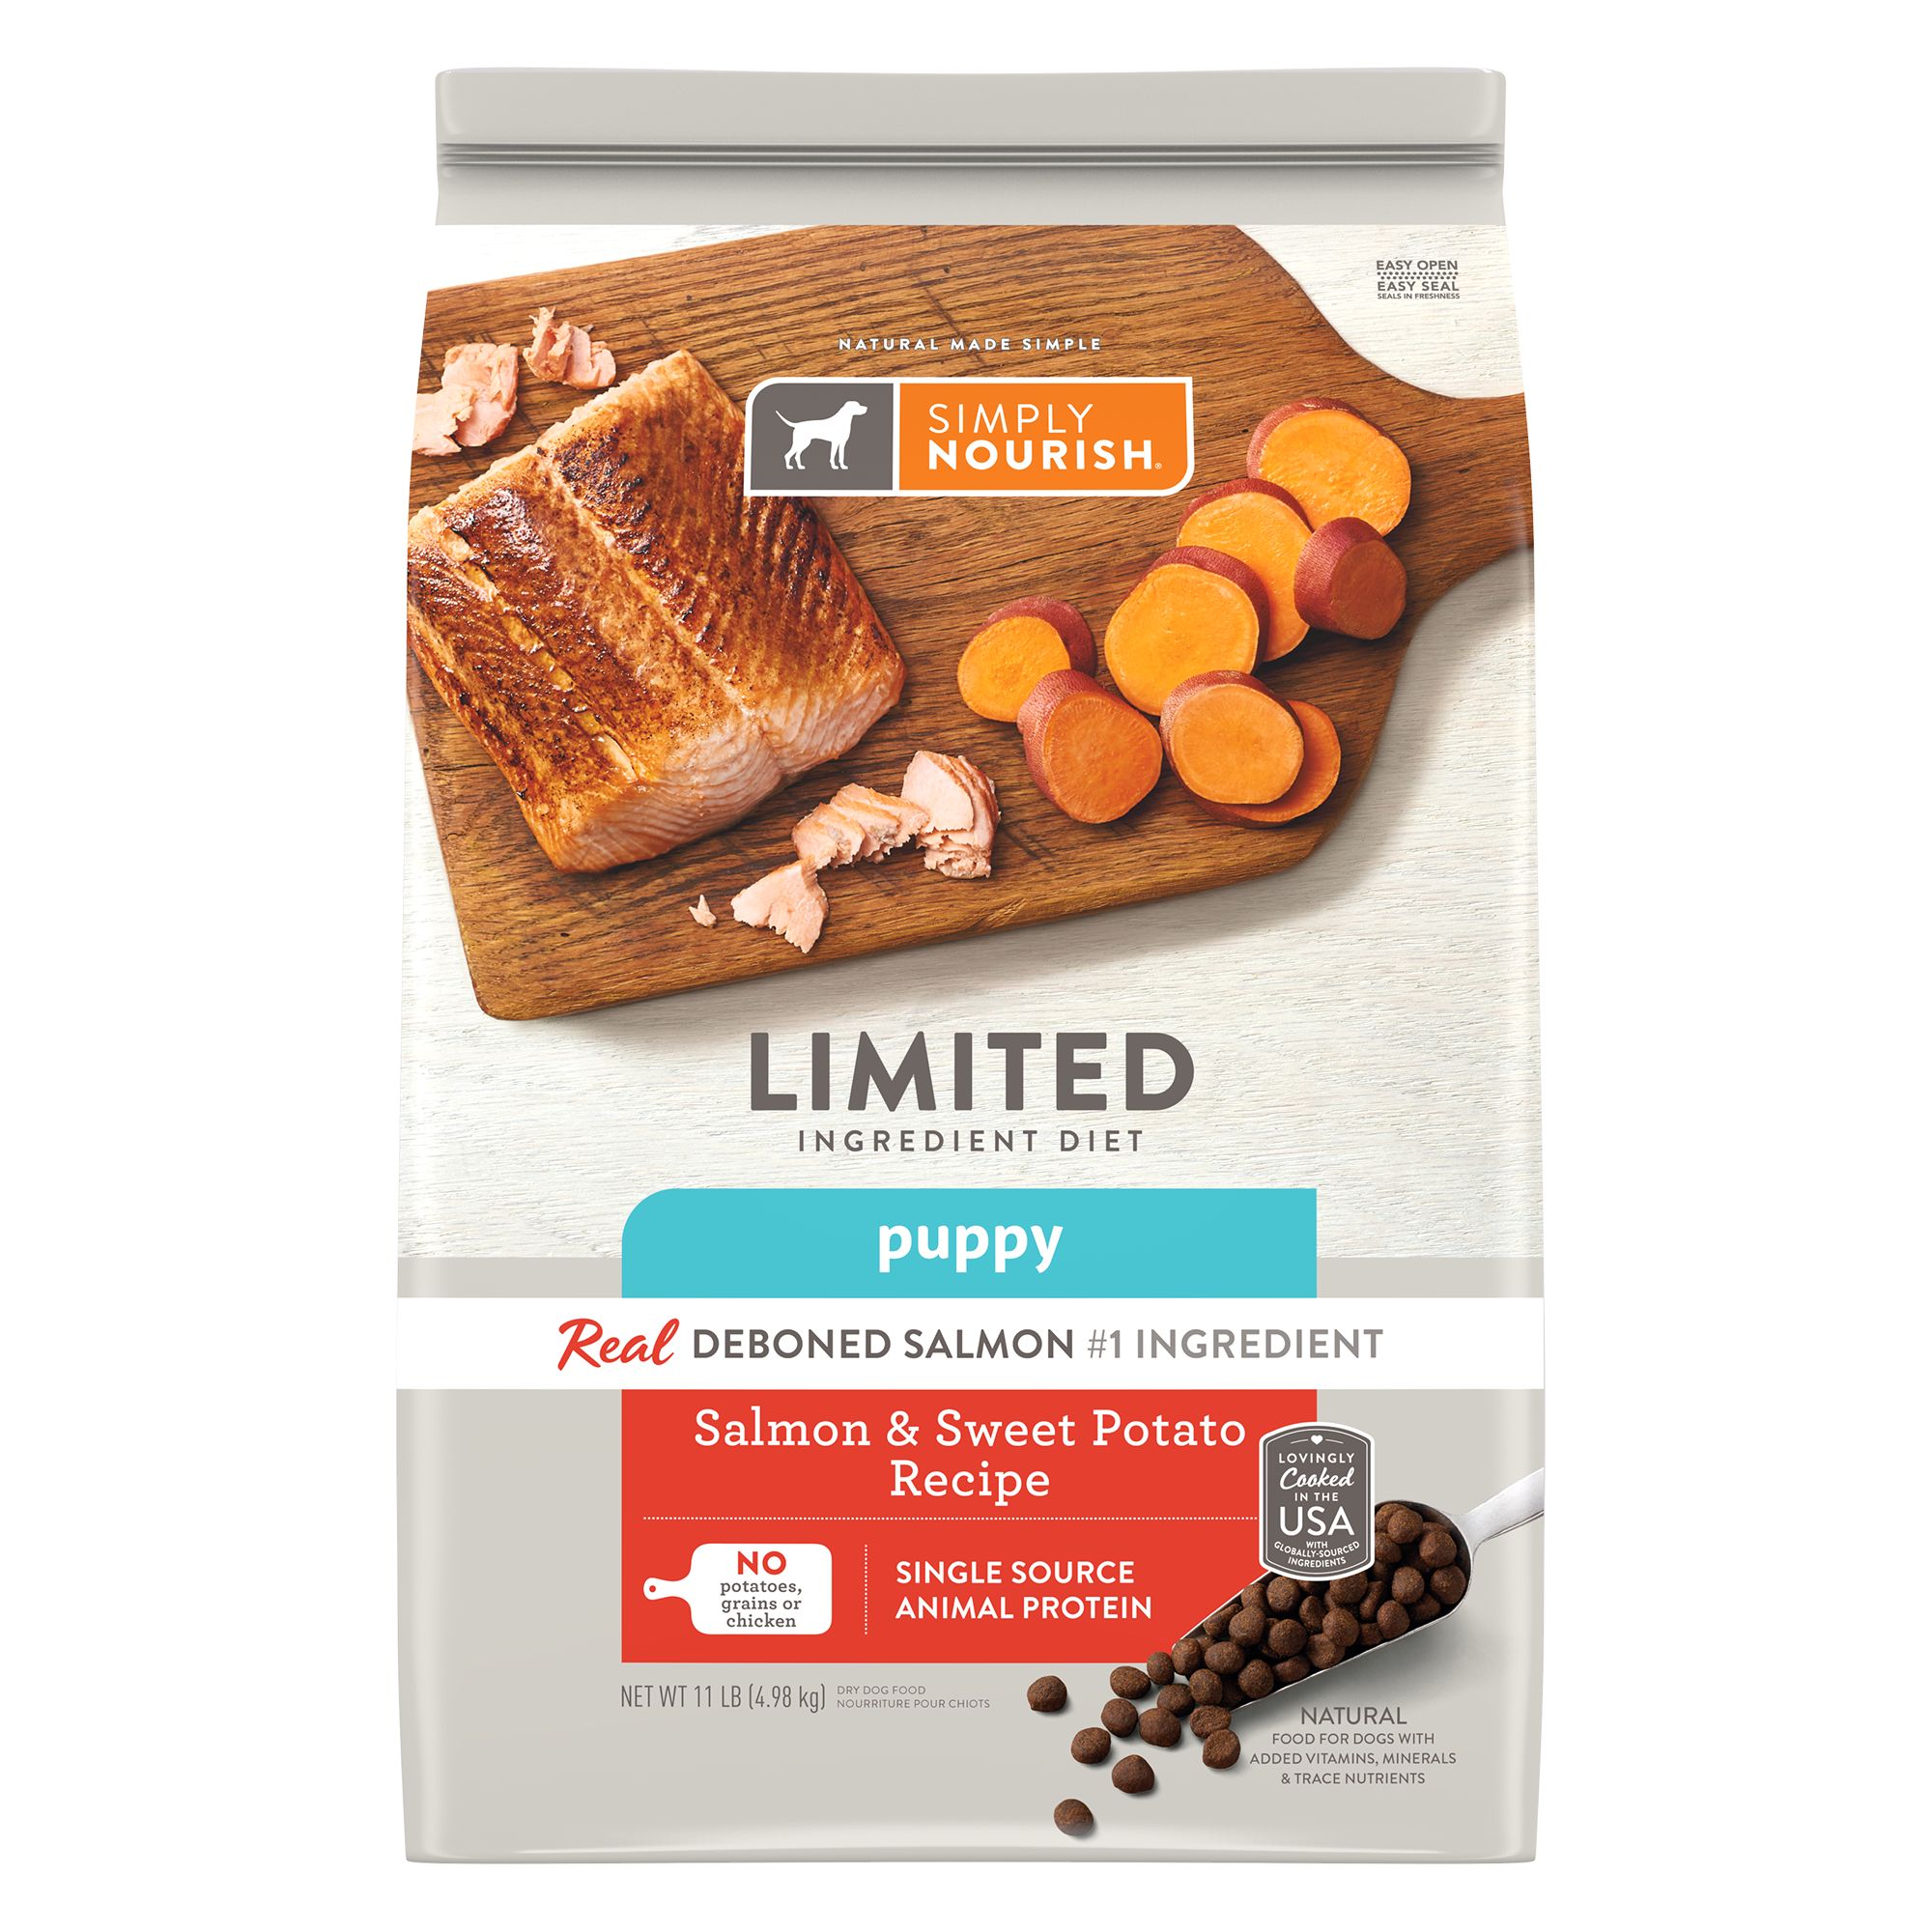 Limited Ingredient Diet Puppy Food 